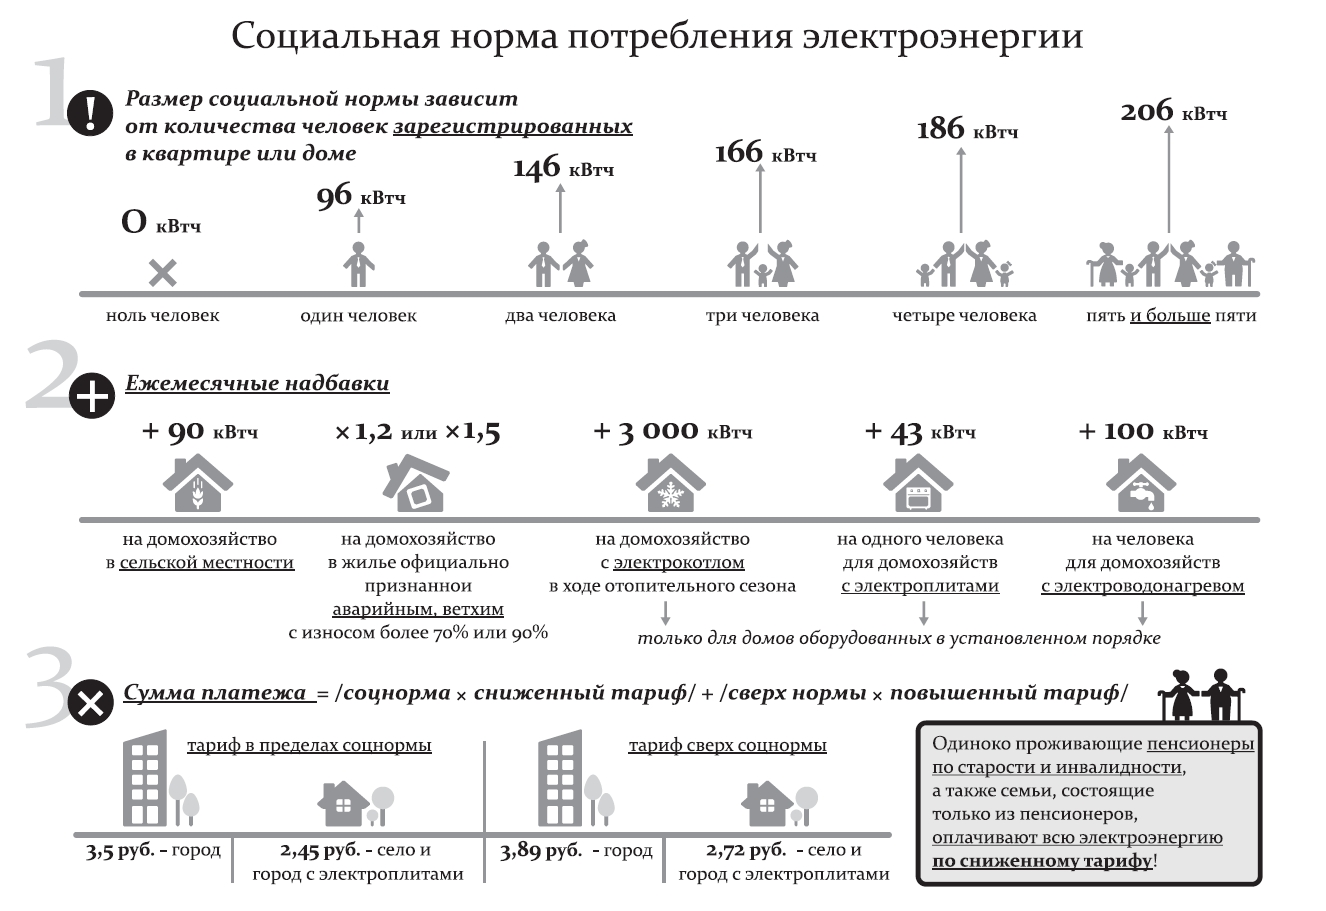 Платеж за потребление электроэнергии учи ру. Соц норма электроэнергии на человека Ростовская область 2021. Соц норма электроэнергии на человека Ростовская область 2020. Норма потребления электроэнергии на человека 2021 в Ростовской области. Электроснабжение норма на 1 человека.